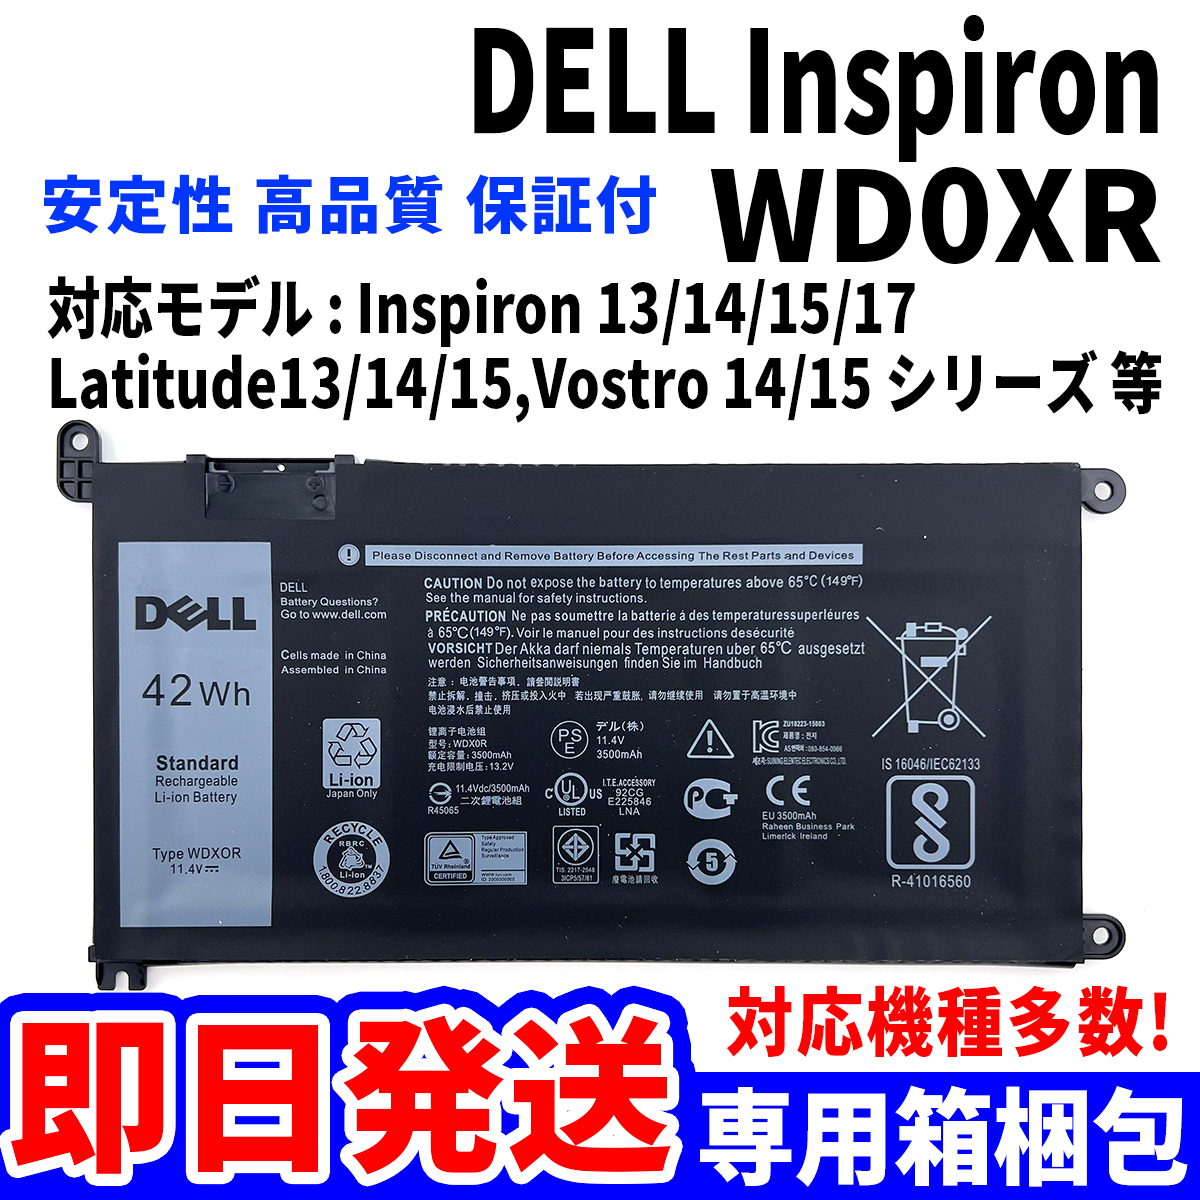 新しいコレクション WD0XR Inspiron DELL 純正新品! バッテリー 単品